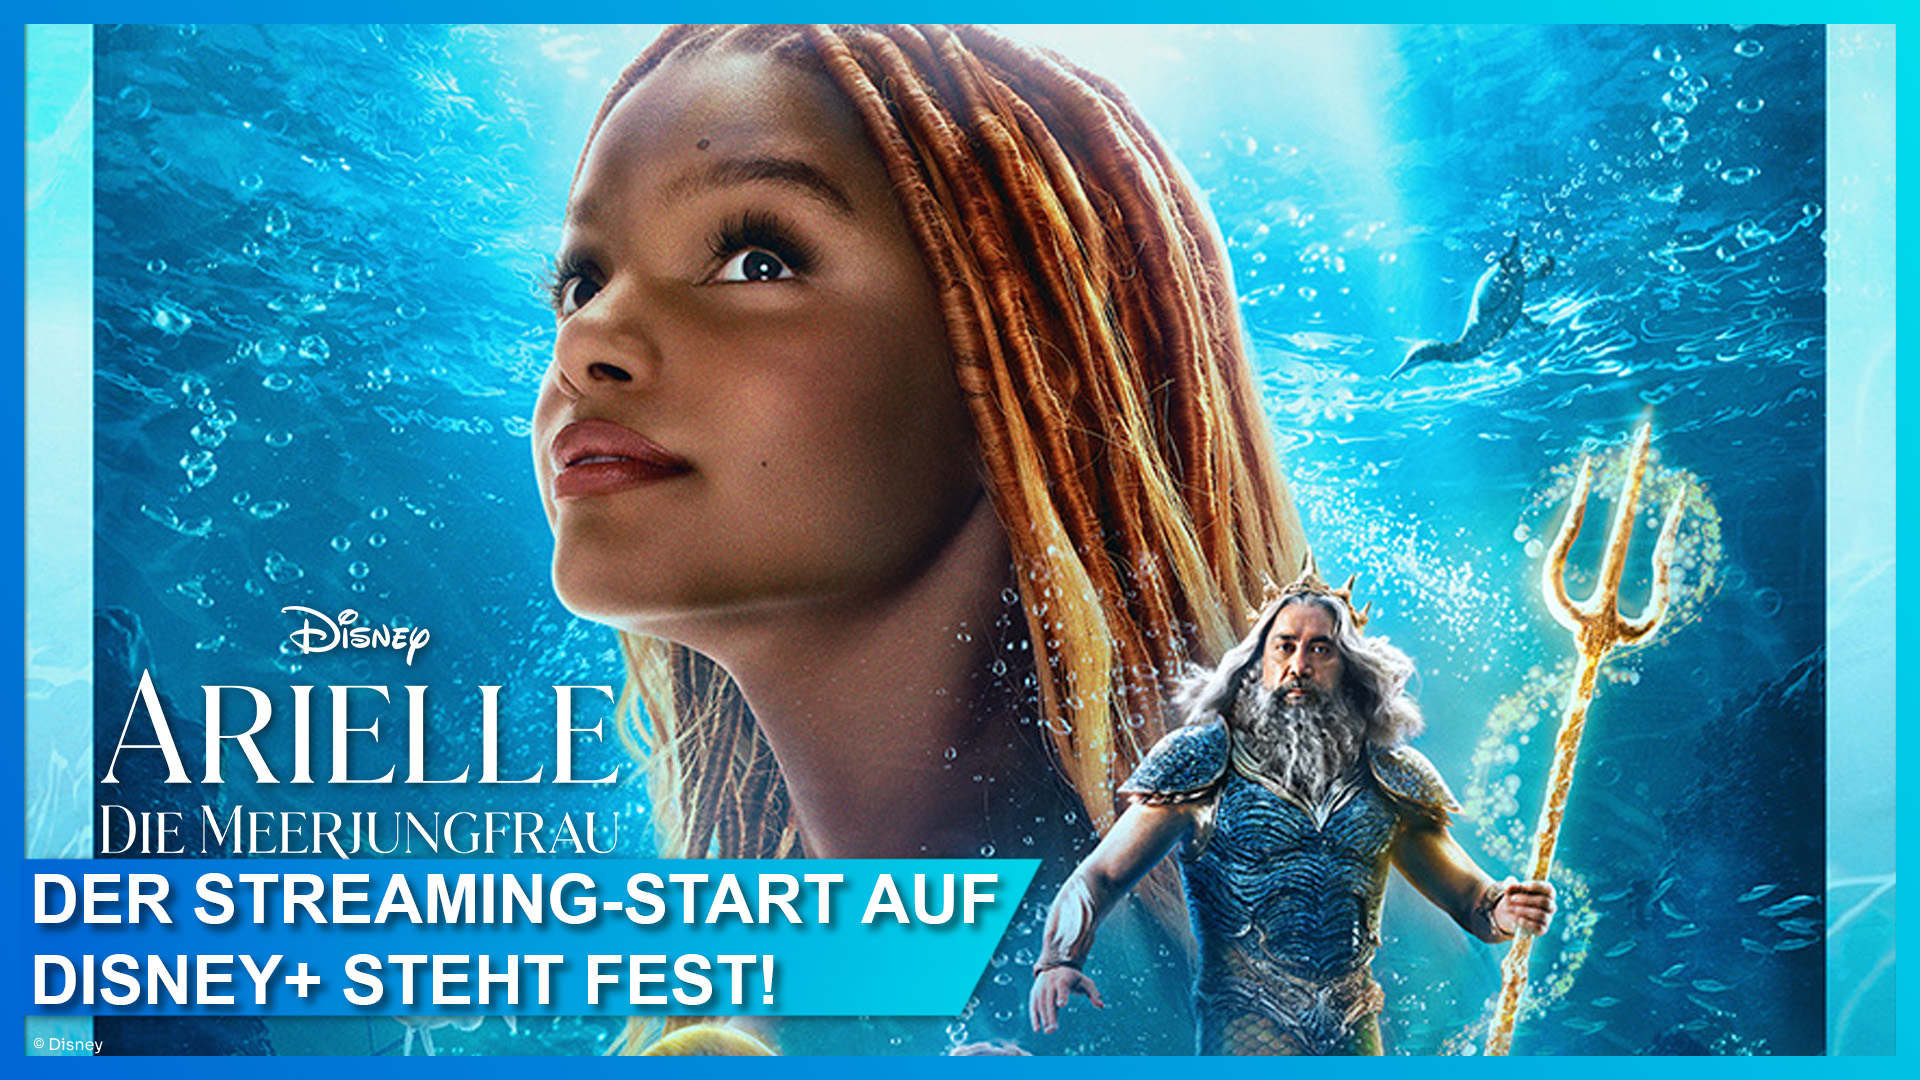 Die "Arielle die Meerjungfrau" Live Action Verfilmung von 2023 kann ab dem 6. September 2023 auf Disney+ gestreamt werden.